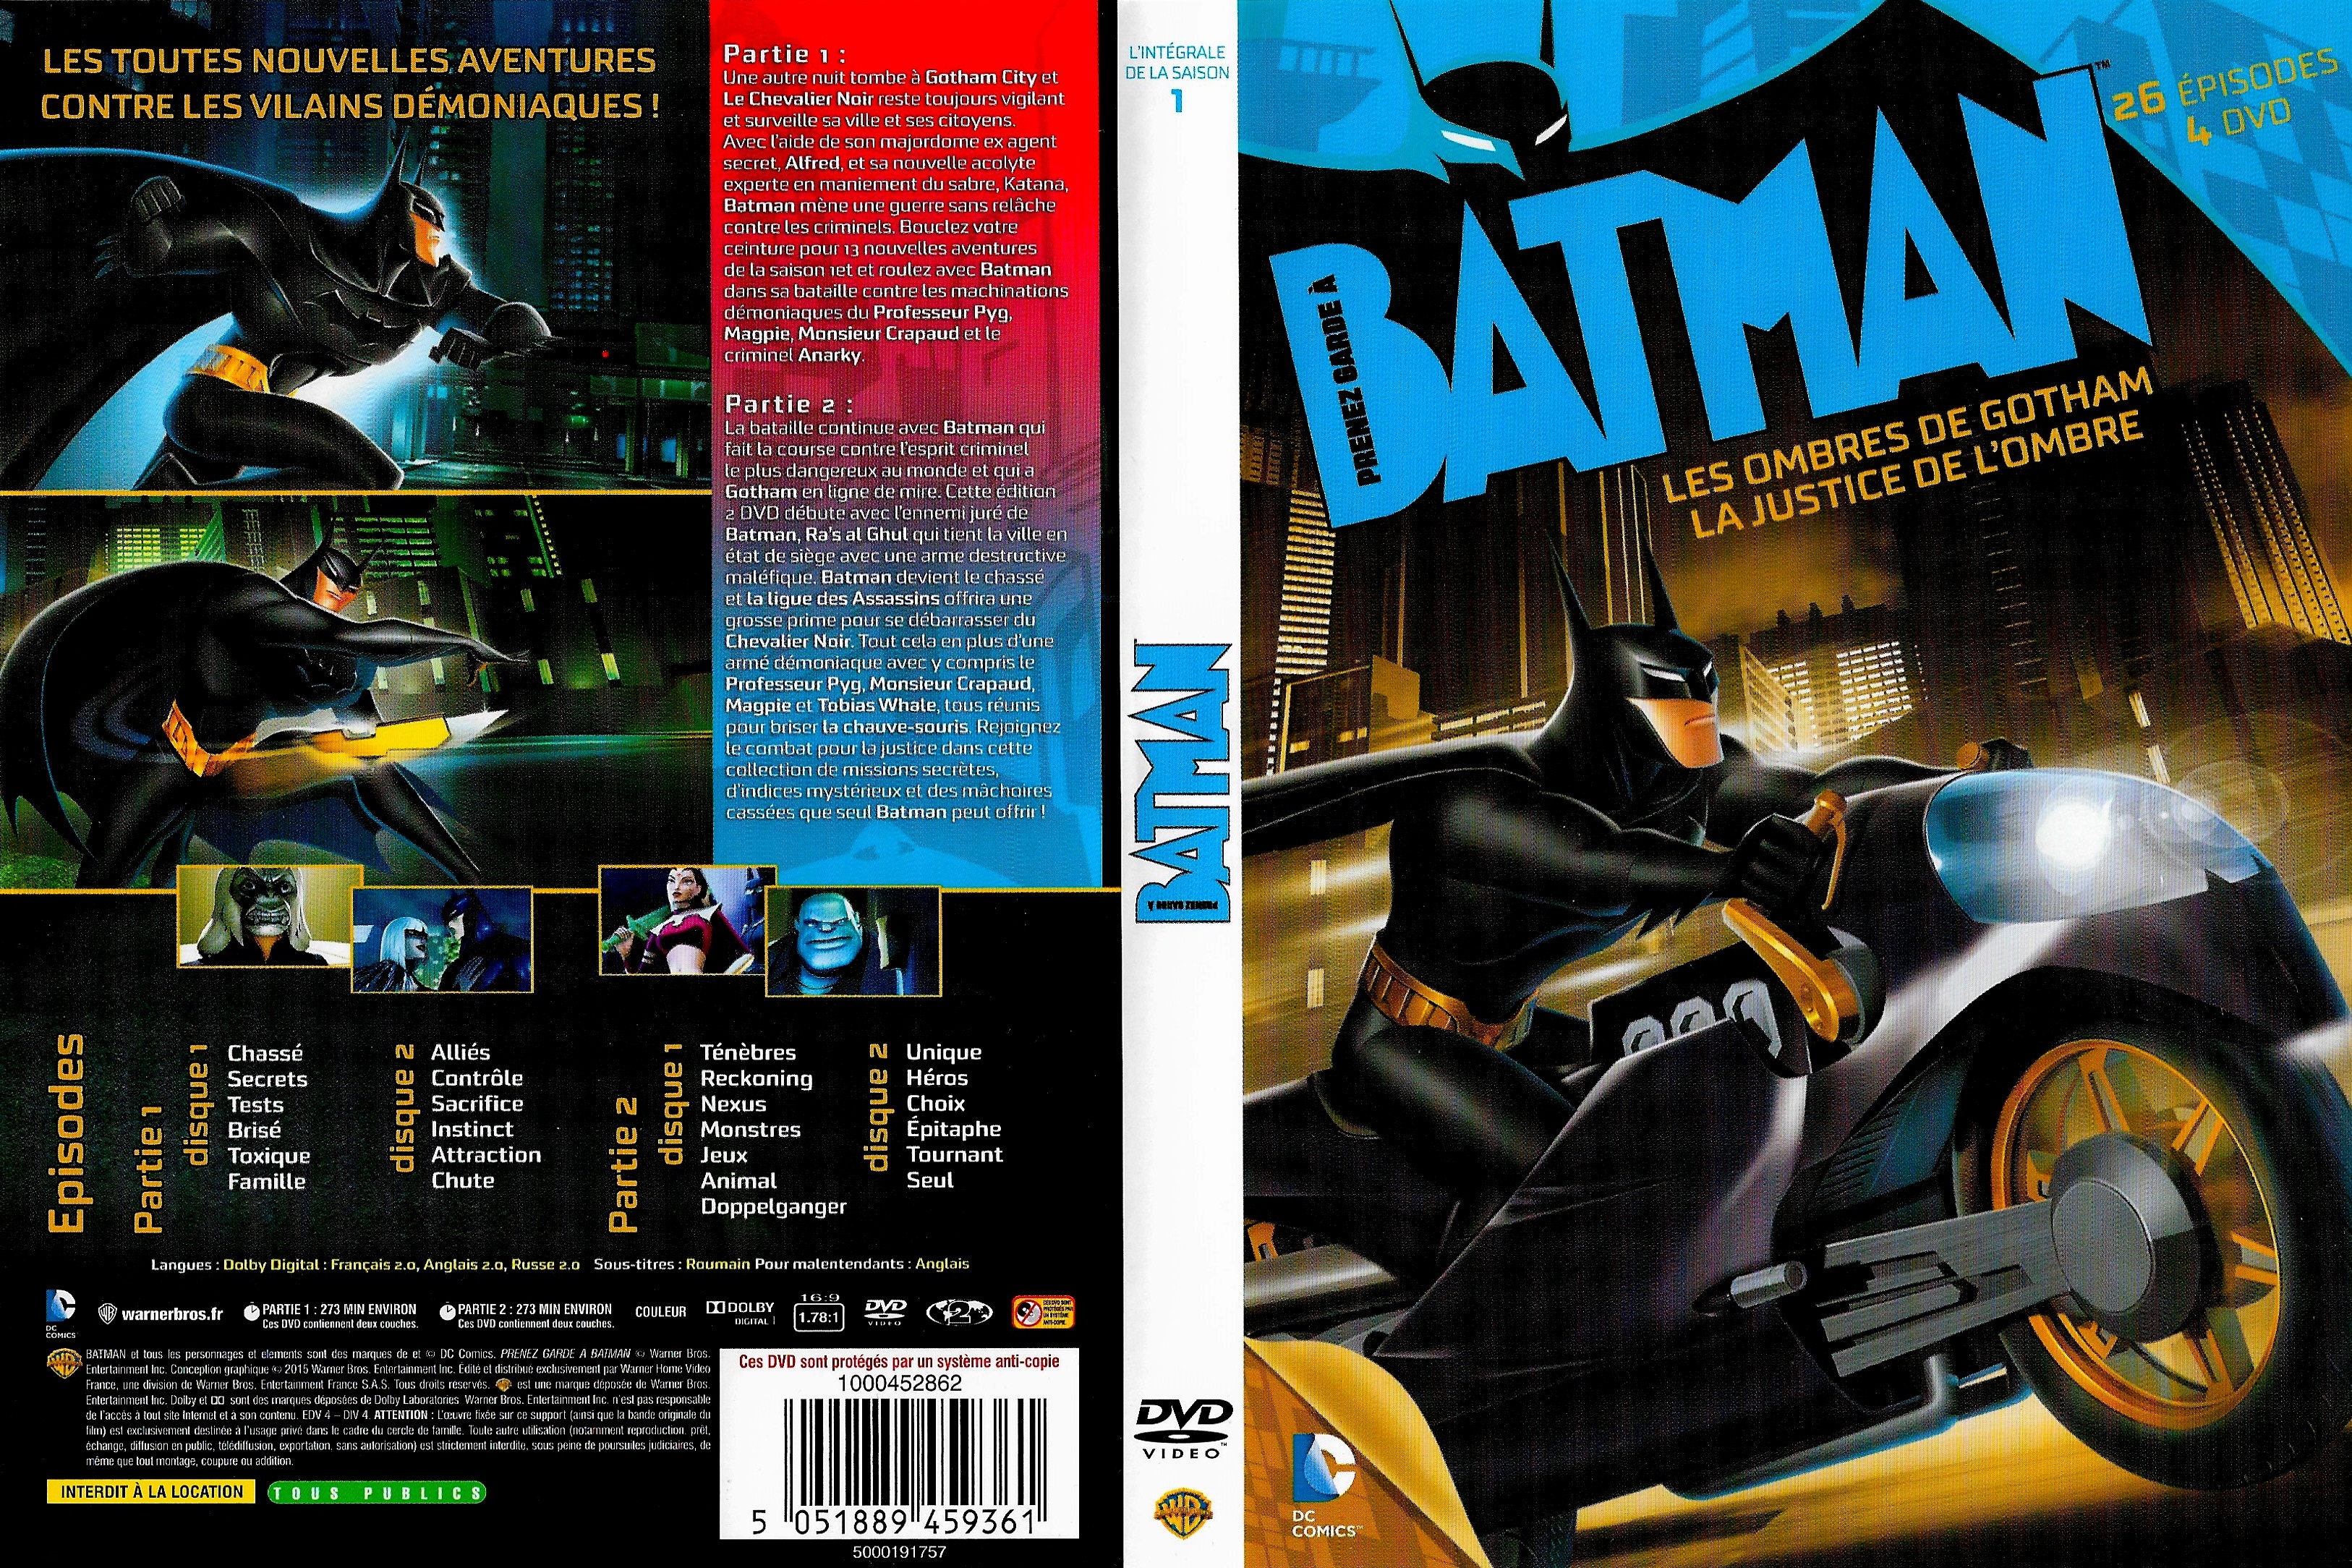 Jaquette DVD de Prenez garde à Batman saison 1 - Cinéma Passion